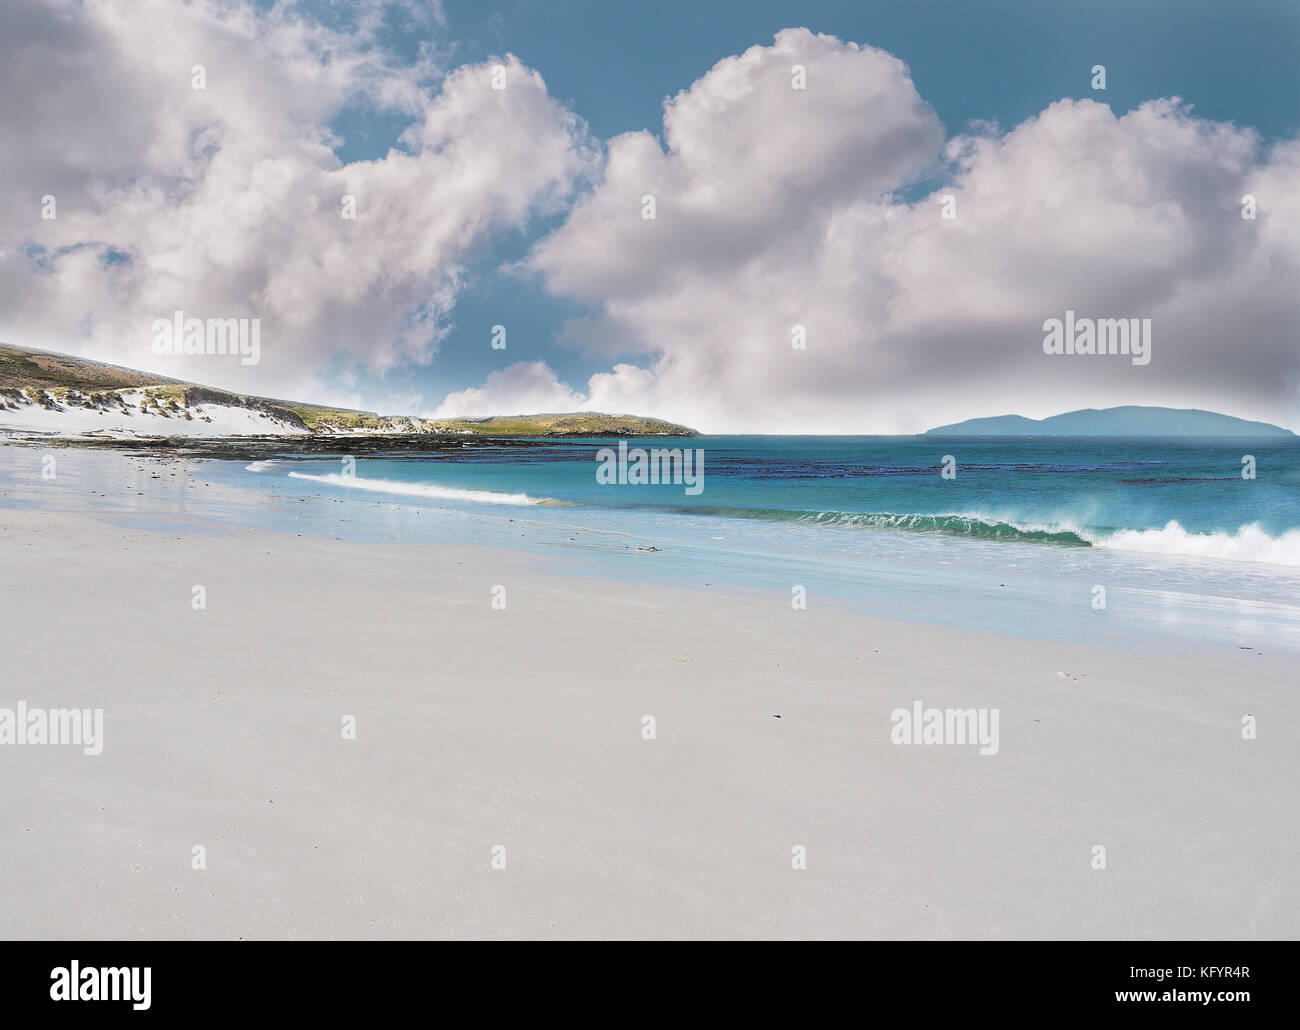 West Falkland Islands seascape magnifique avec une plage de sable blanc, eau turquoise et fluffy clouds. Banque D'Images